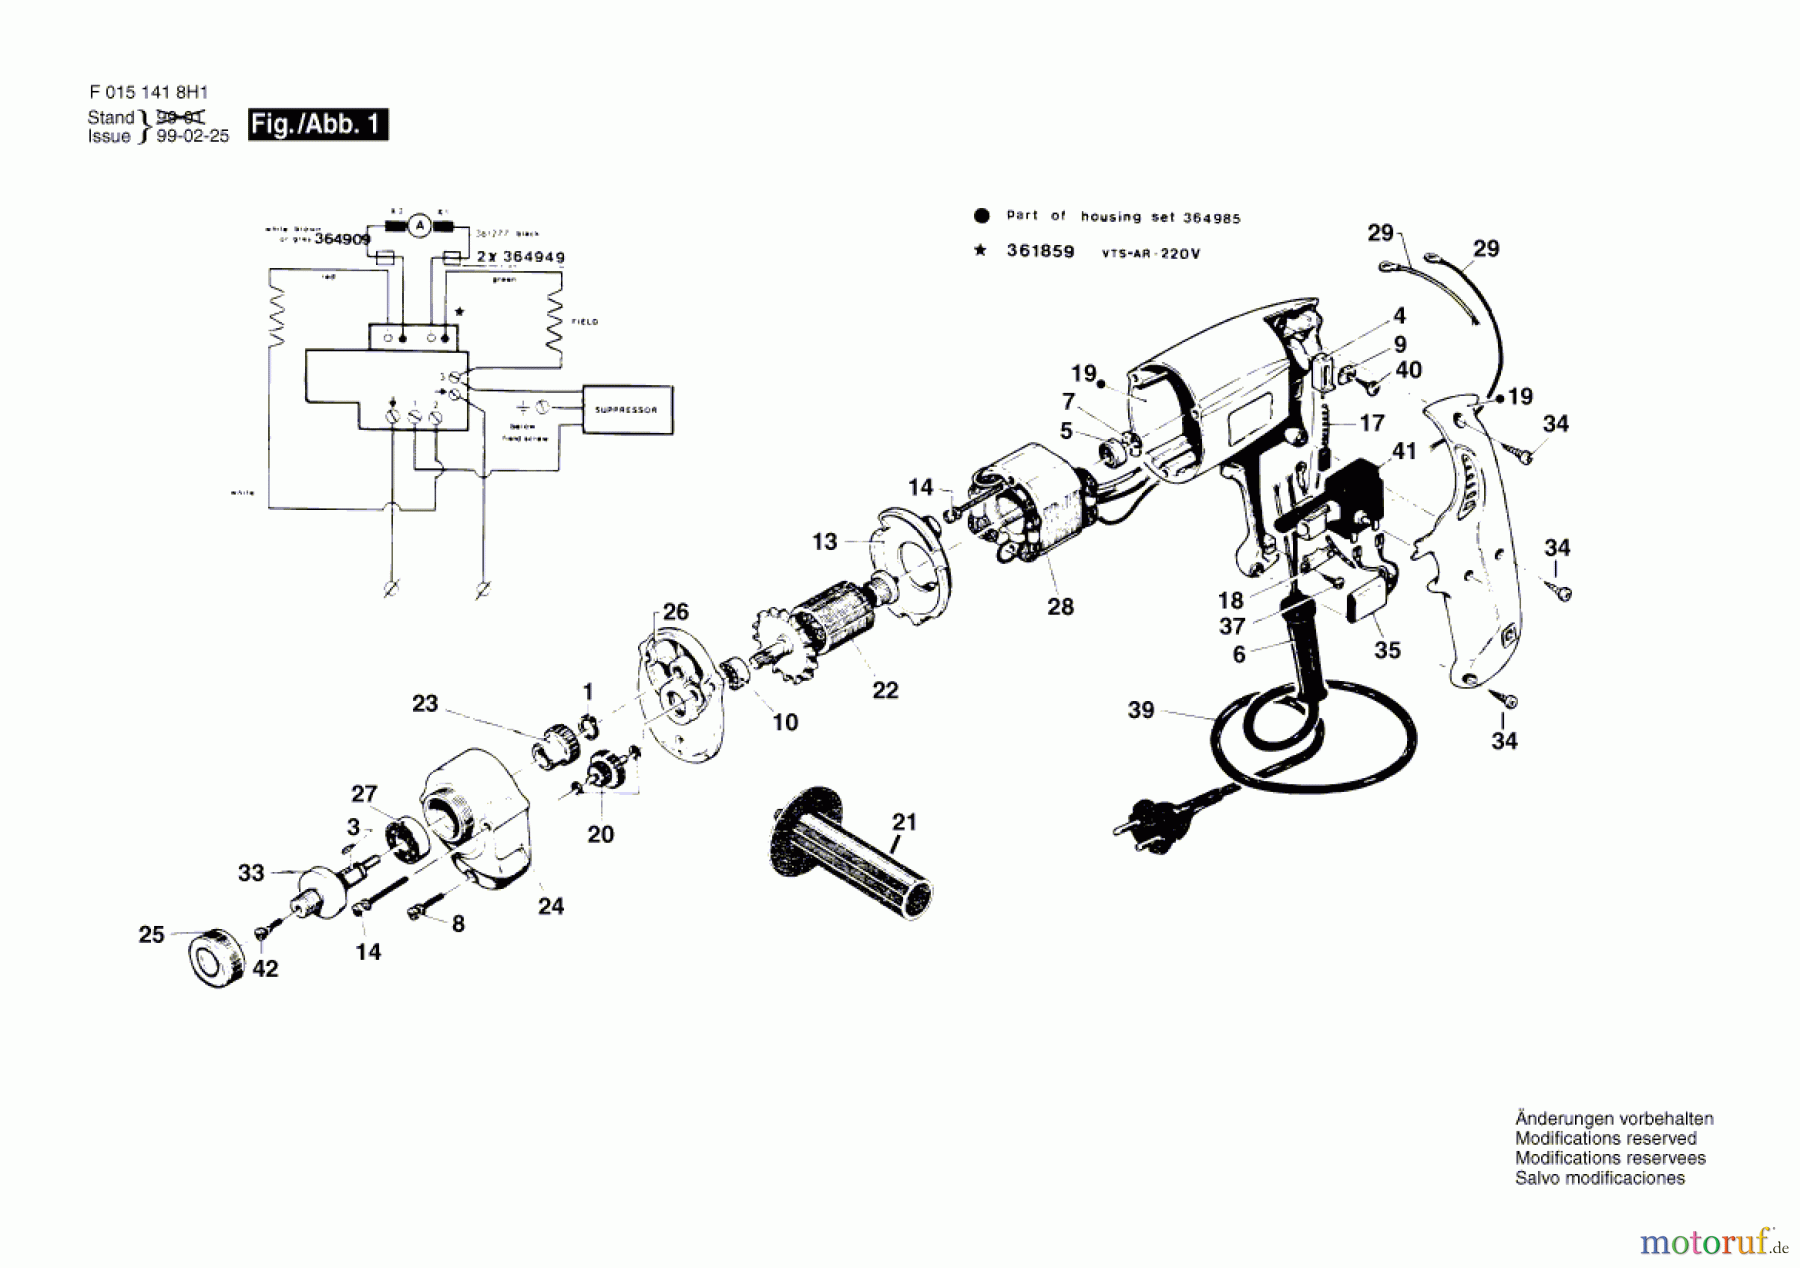  Bosch Werkzeug Bohrmaschine 1418H1 Seite 1